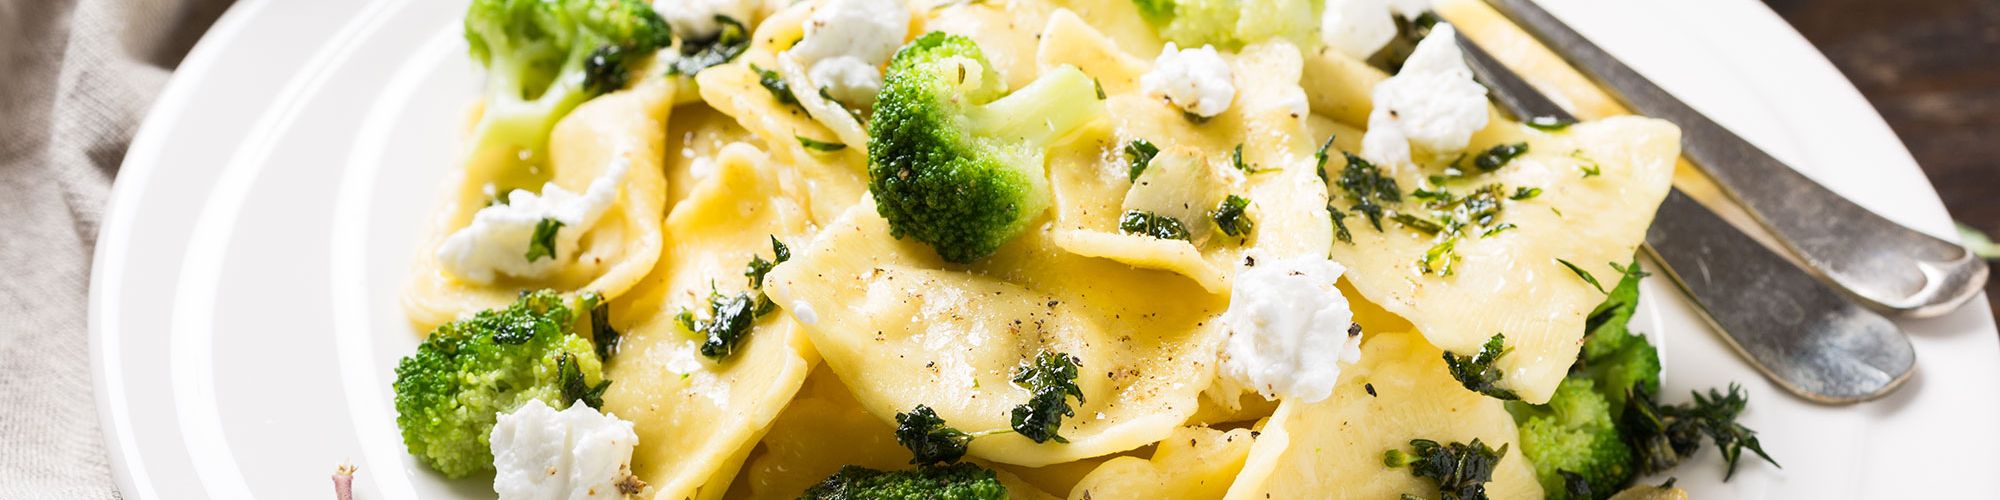 ricetta Ravioli con broccoli, caprino ed erbe con pasta fresca